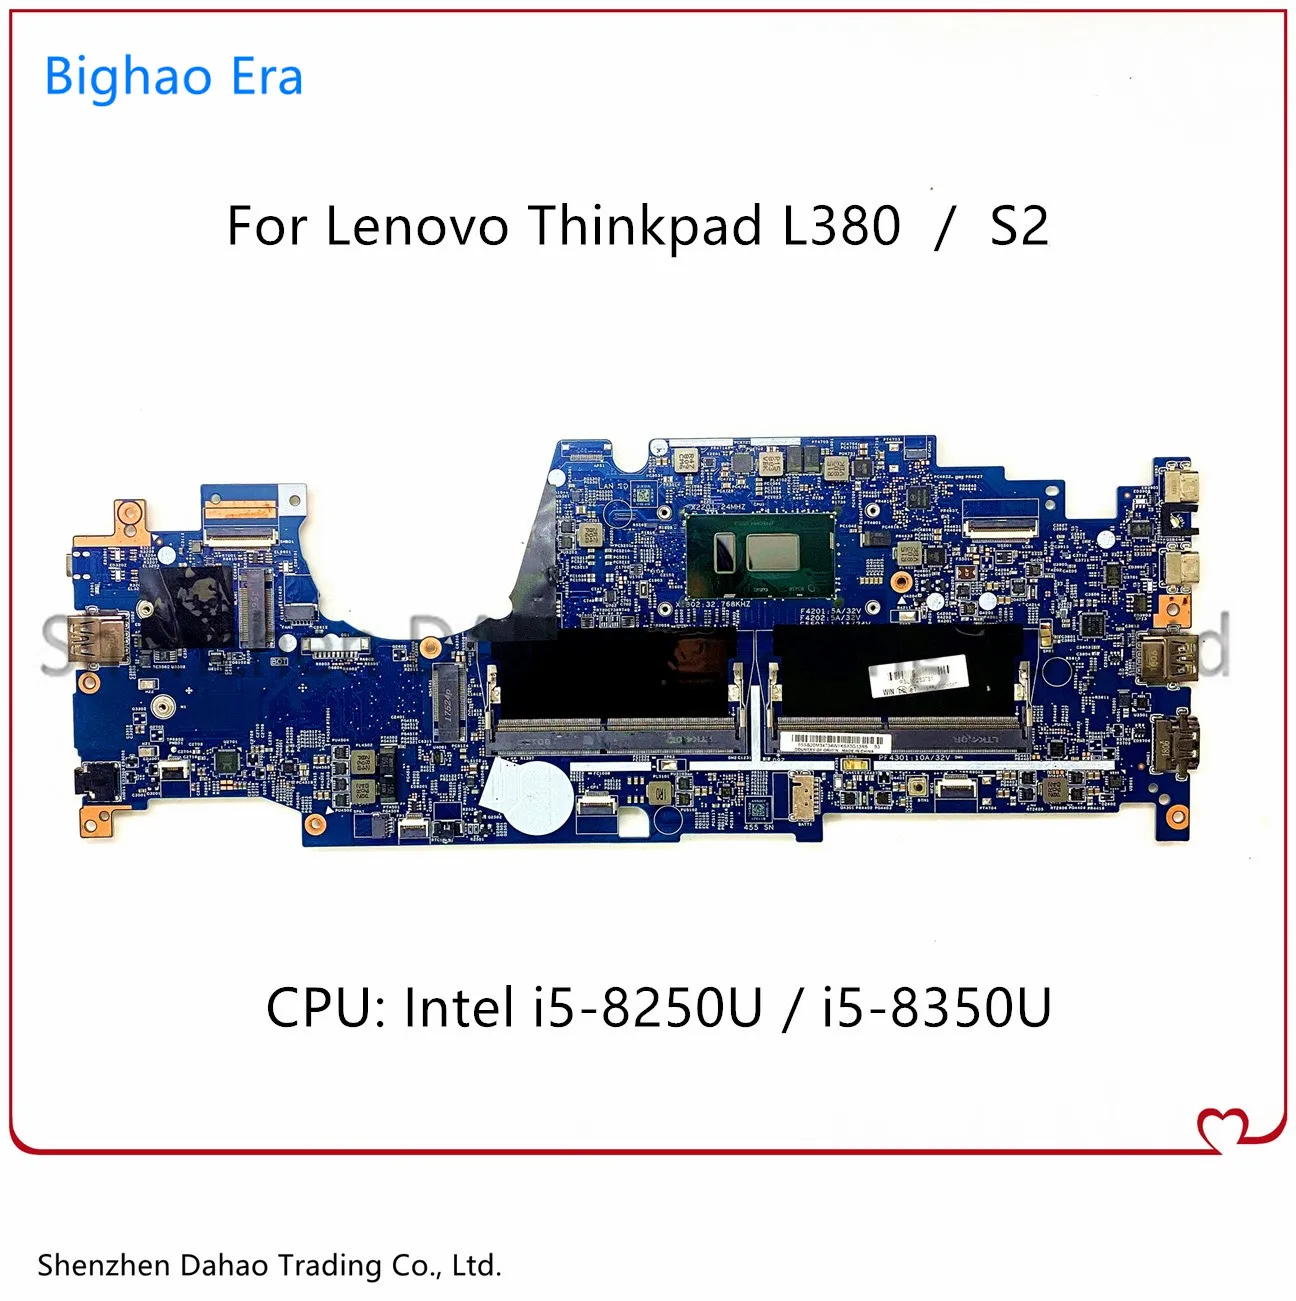 

For Lenovo Thinkpad L380 Yoga S2 Laptop Motherboard W/ i5-8250U/8350U CPU 17821-1N 17821-2 Mainboard Fru:02DA267 02HM020 01LW954